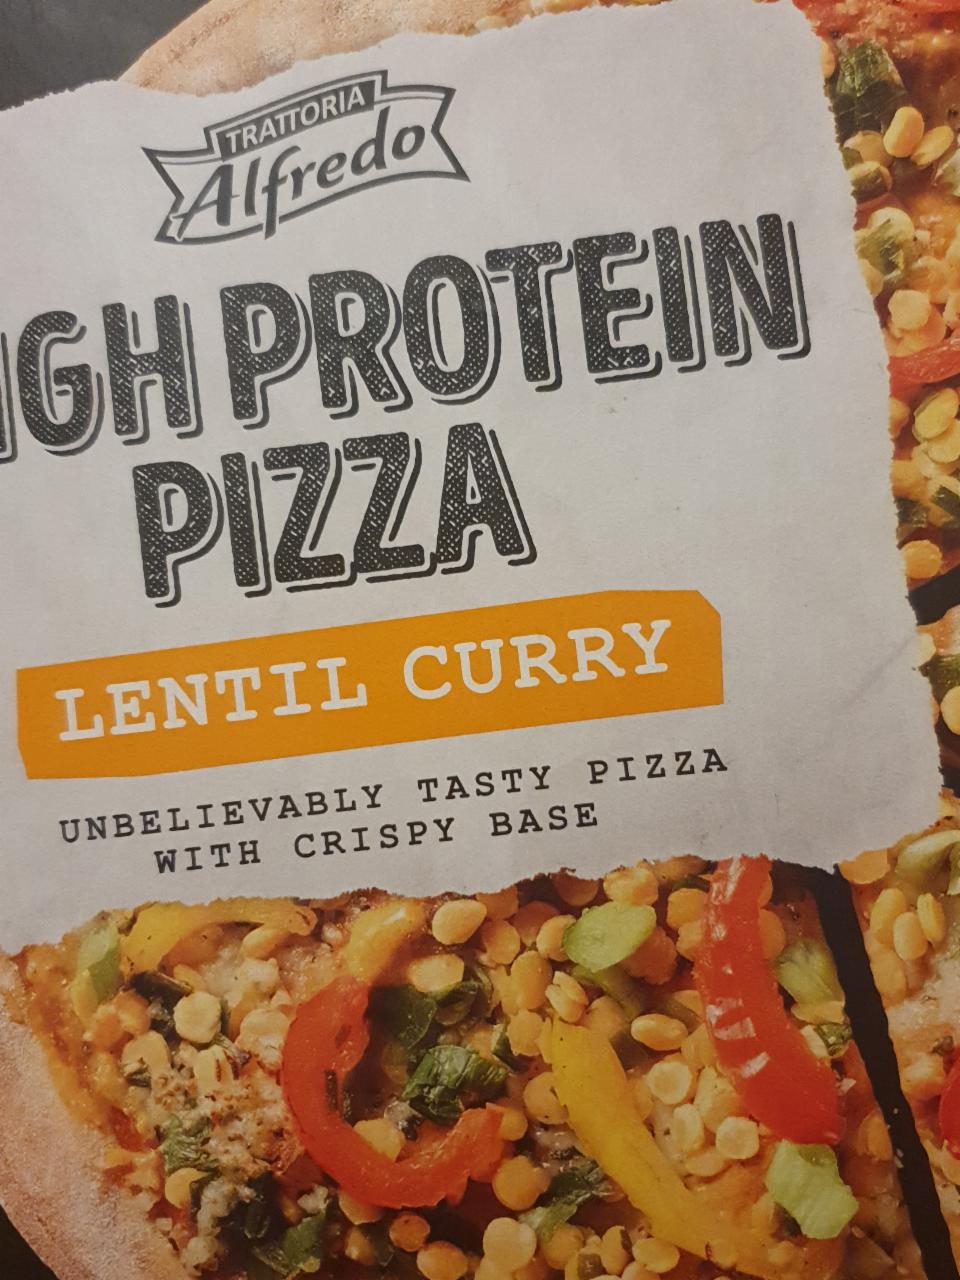 Képek - High Protein Pizza Lentil Curry Trattoria Alfredo